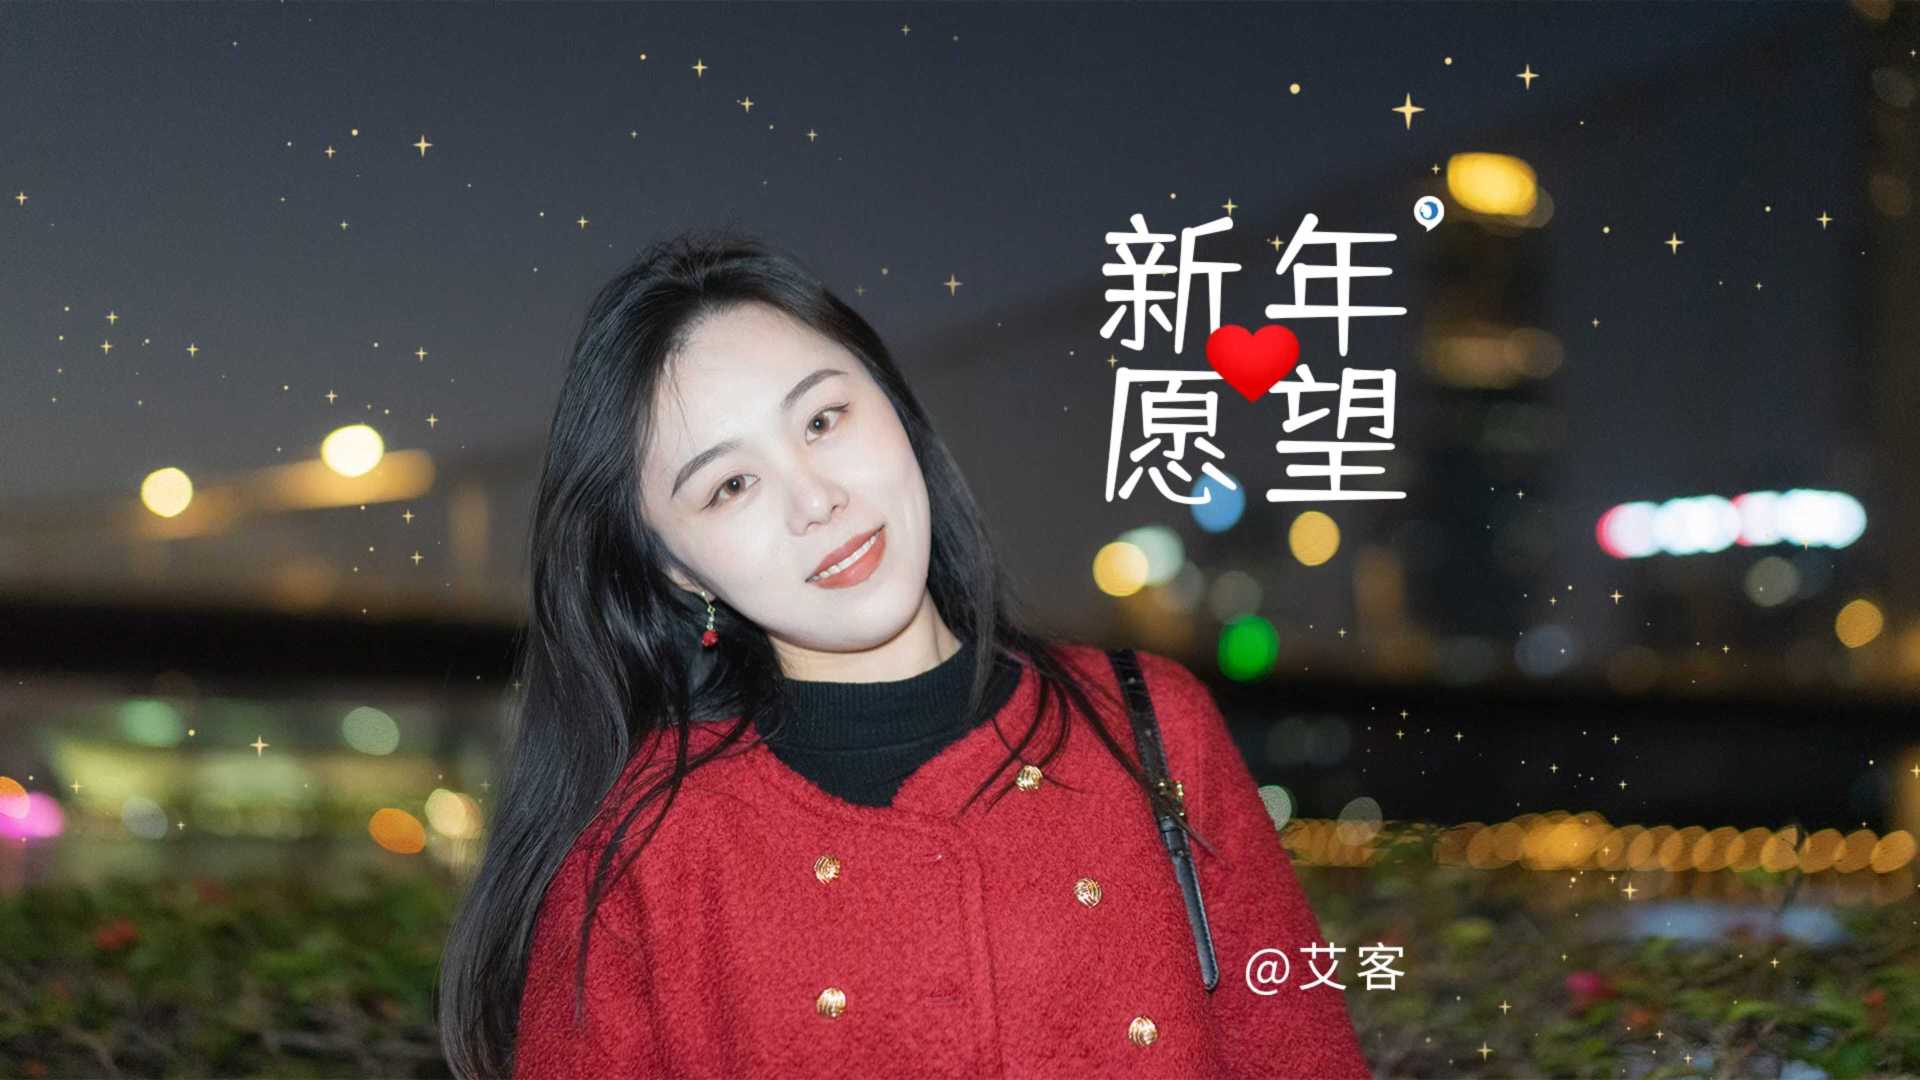 这里是广州的跨年夜，来评论区说说你的新年愿望吧！